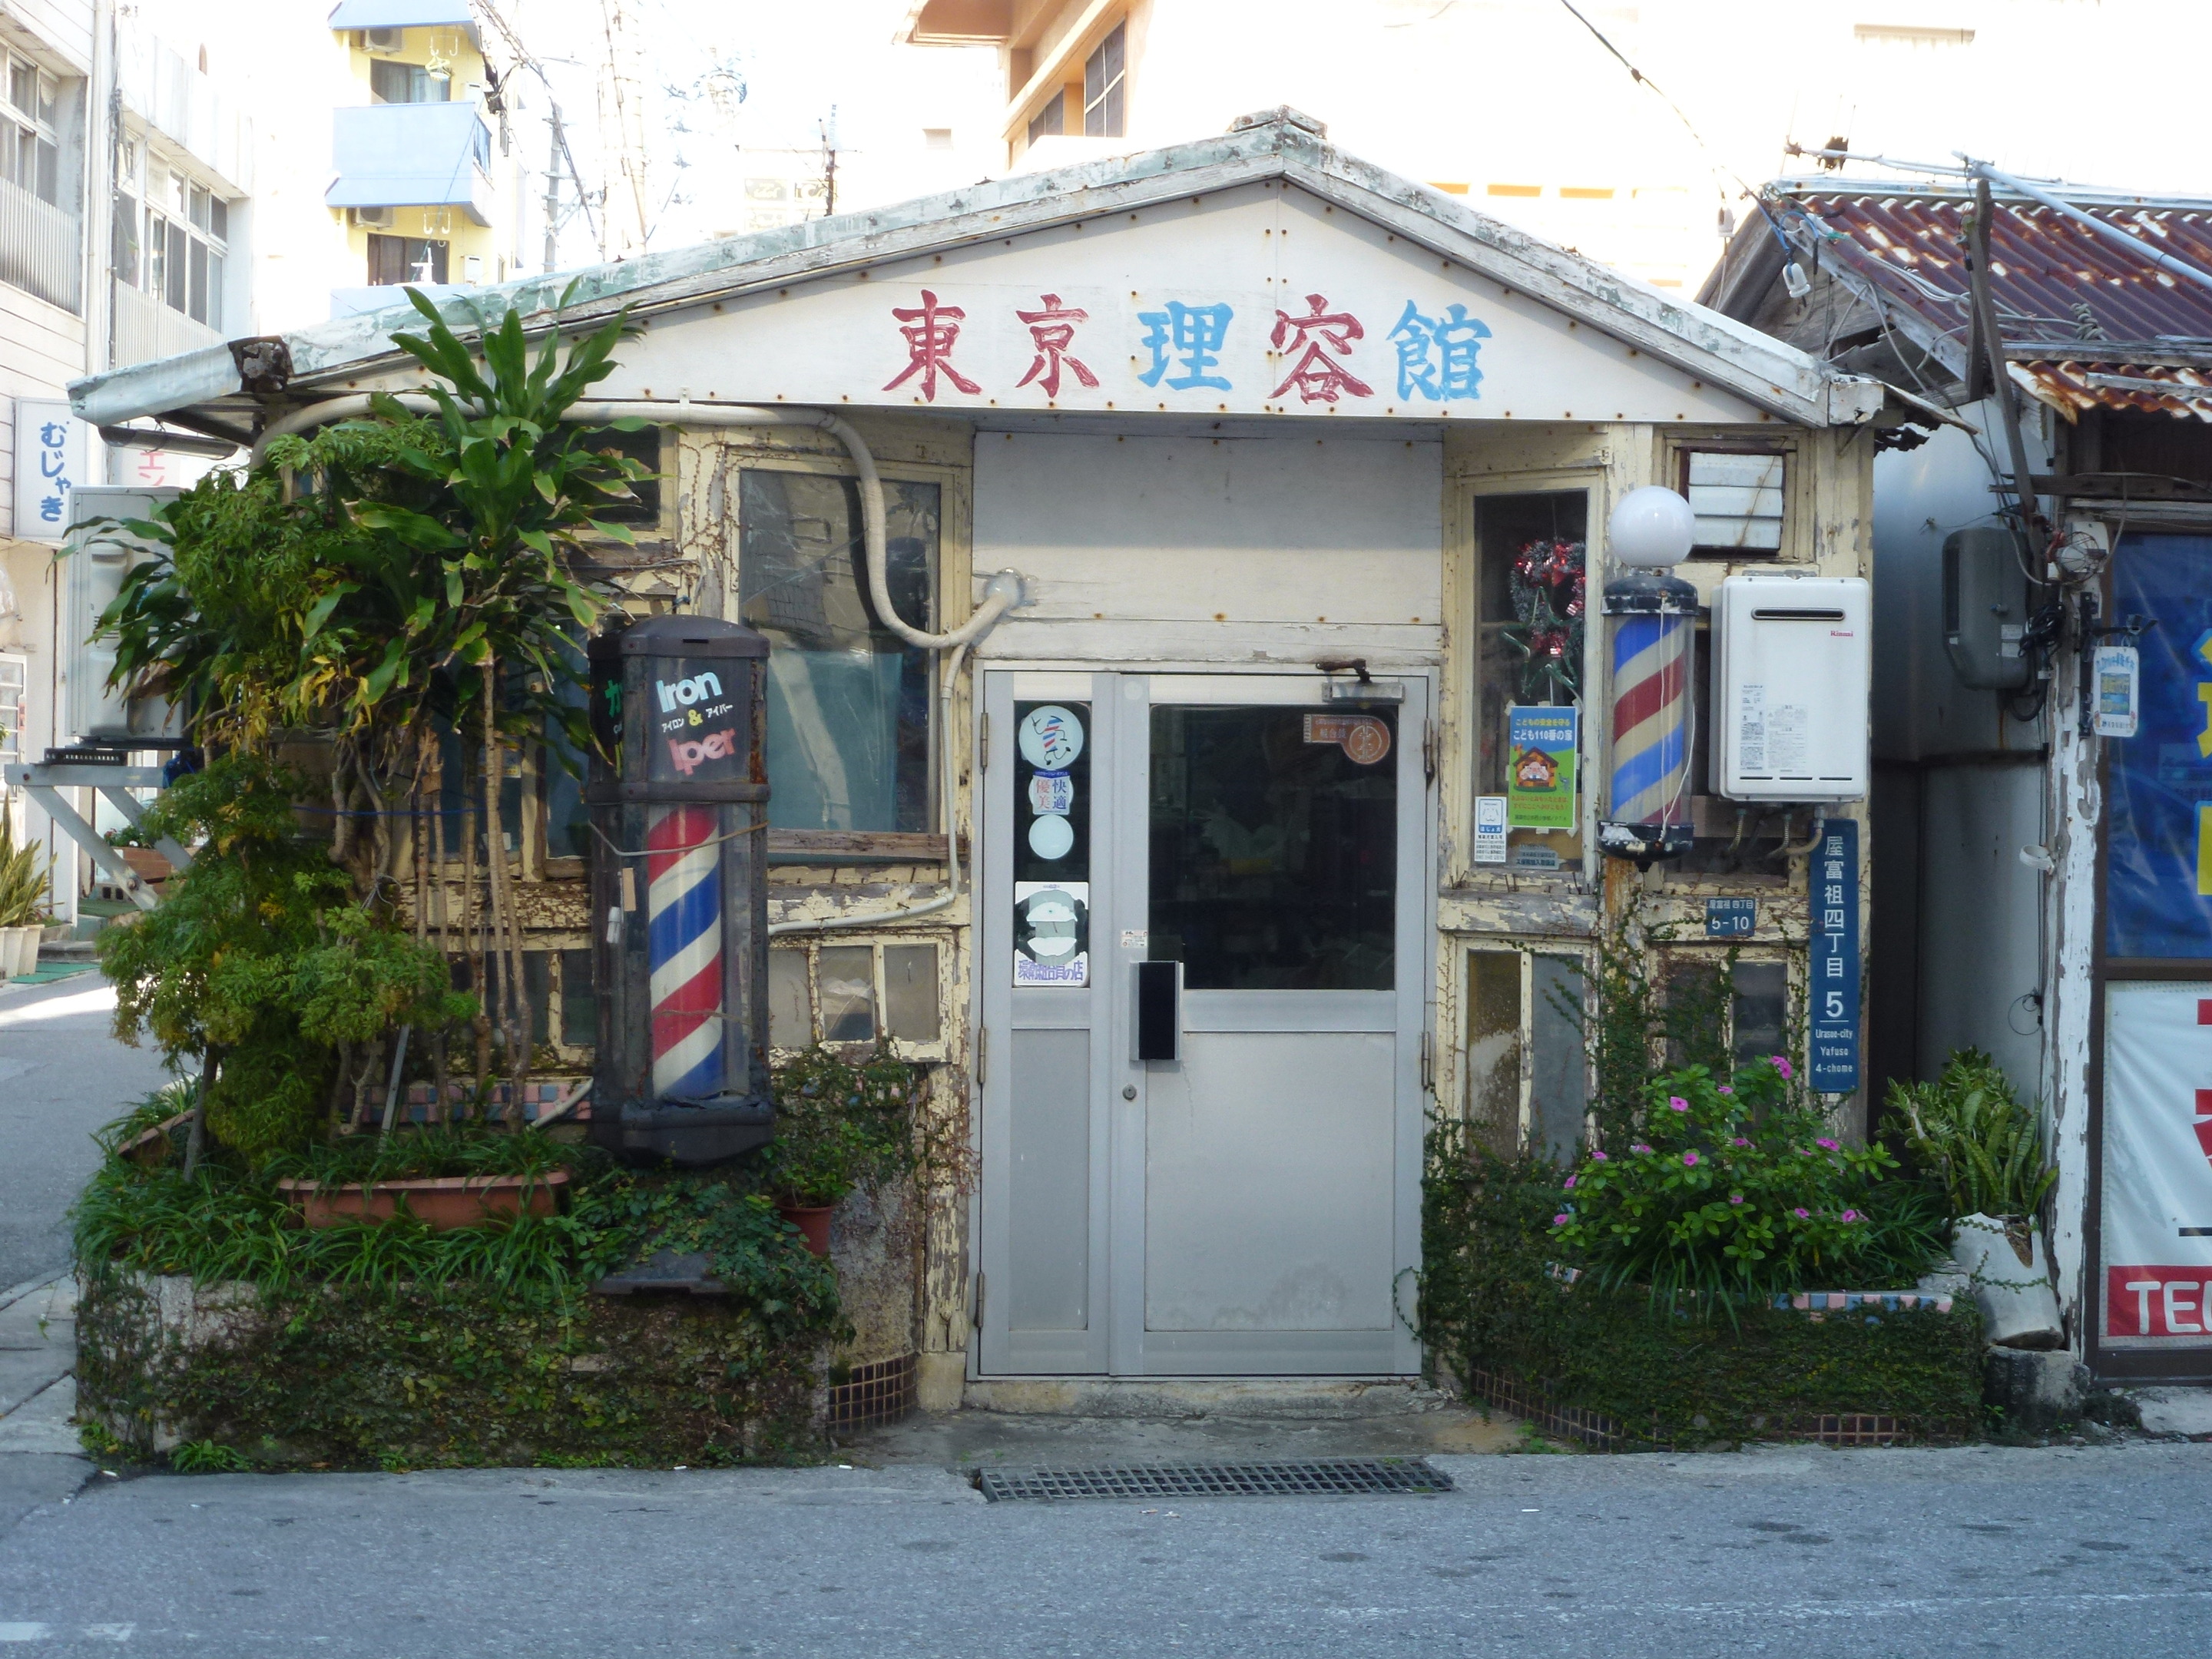 東京理容館 浦添市 屋富祖大通り 未成年でも診察可能な性病治療は沖縄のなしろハルンクリニックで